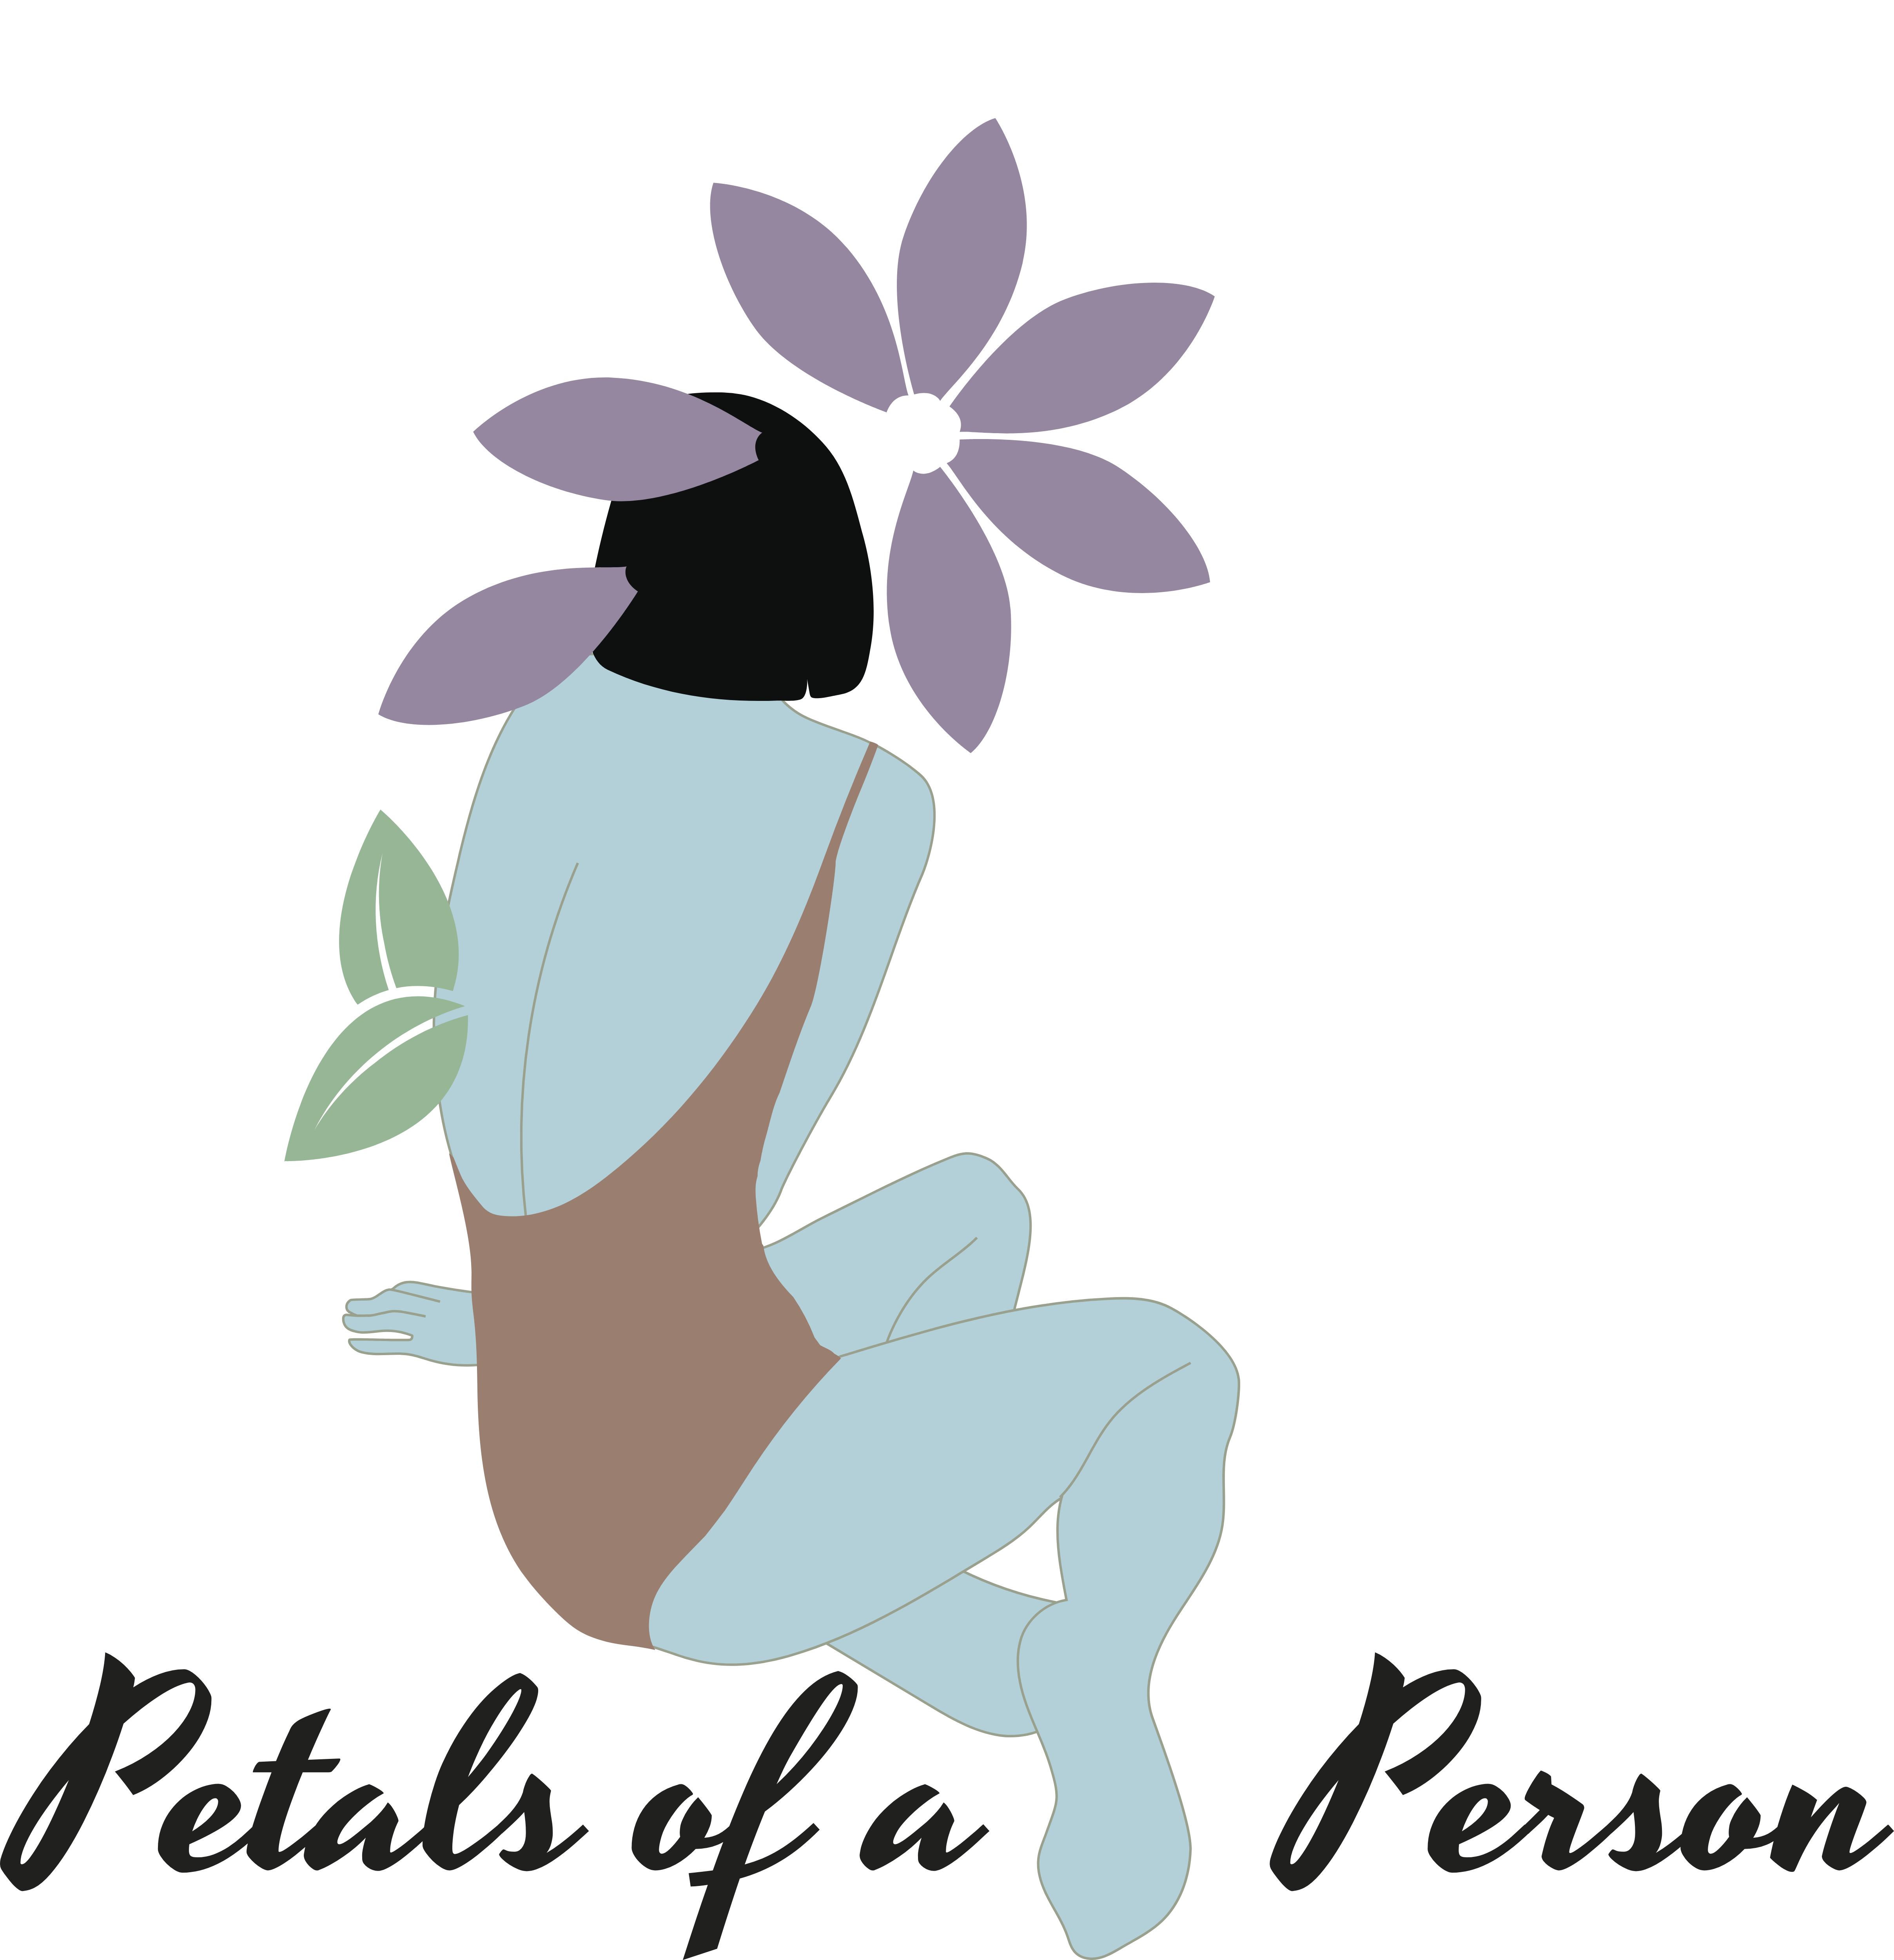 Petals of a Person Logo